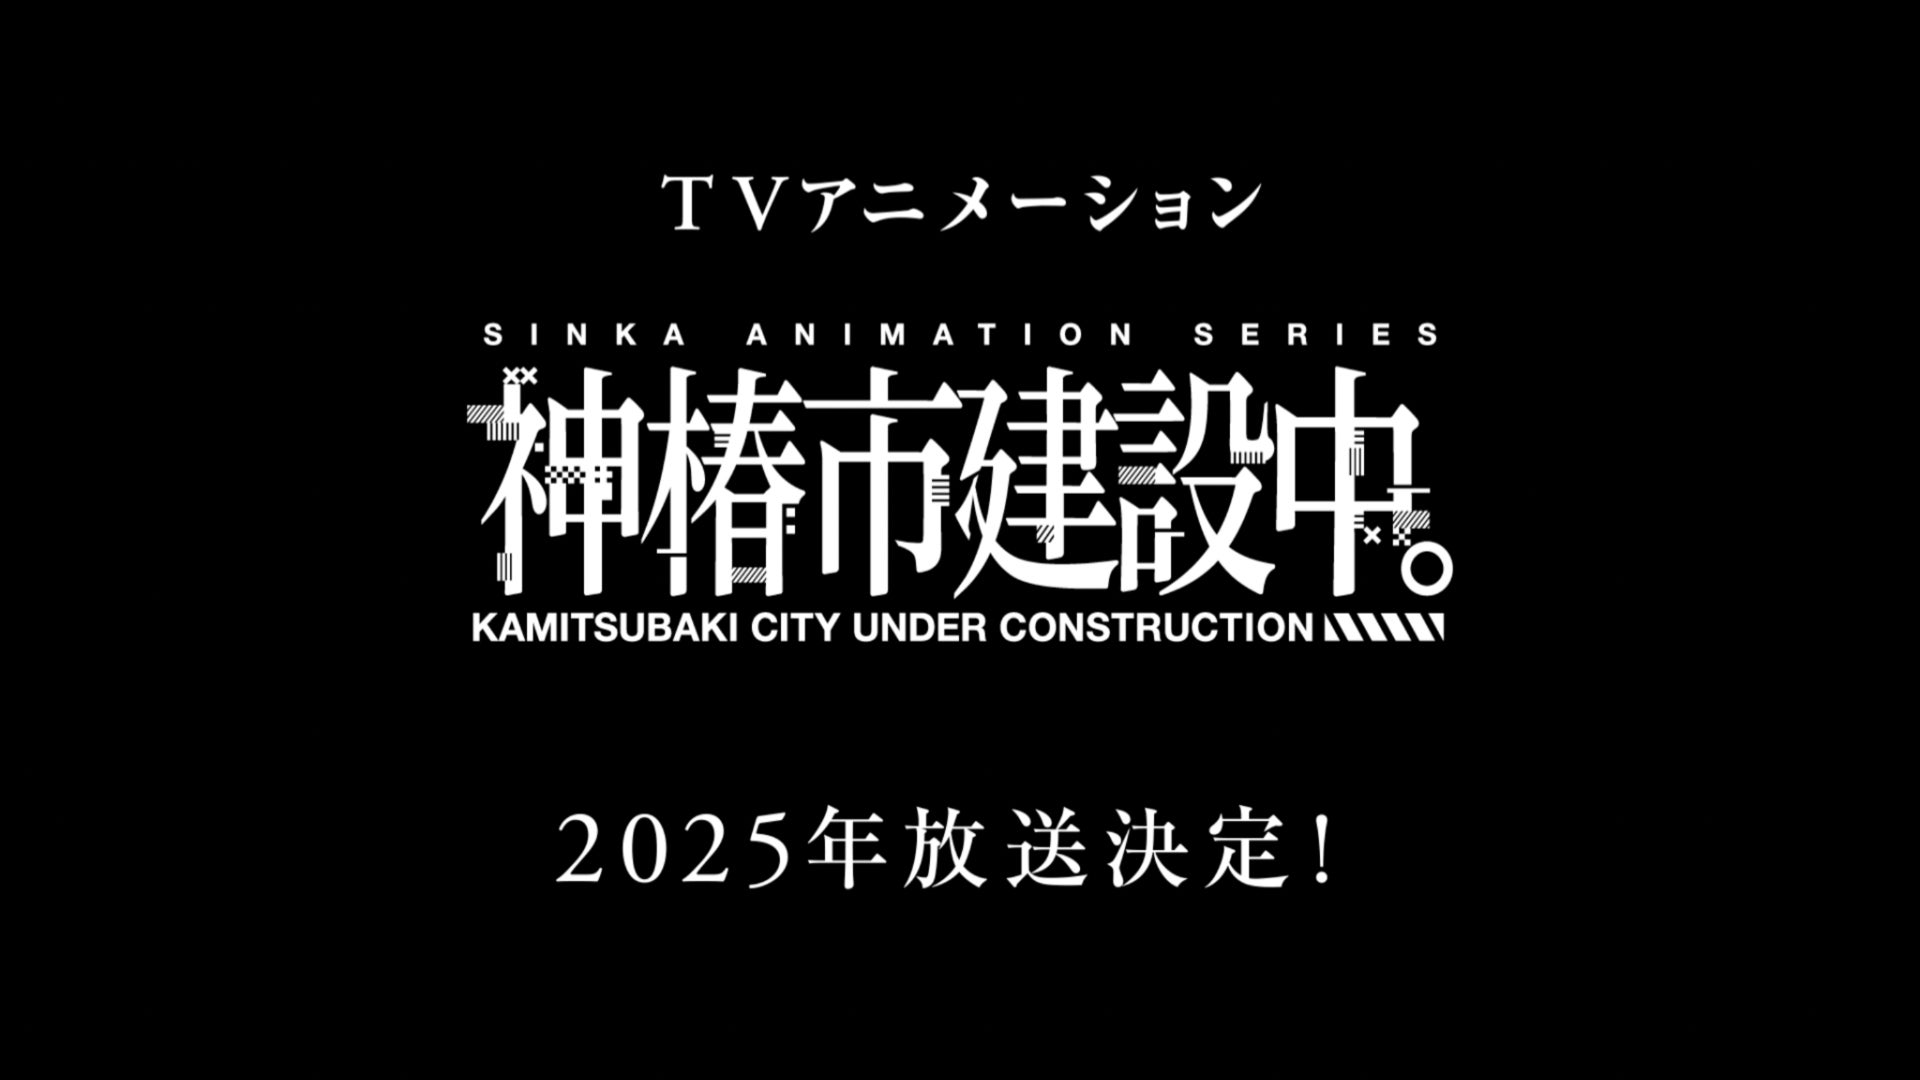 『神椿市建設中。』が2025年TVアニメ化決定！V.W.Pなどのバーチャルアーティストプロデュースを手がけるKAMITSUBAKI STUDIOによる初のTVアニメ放送が決定